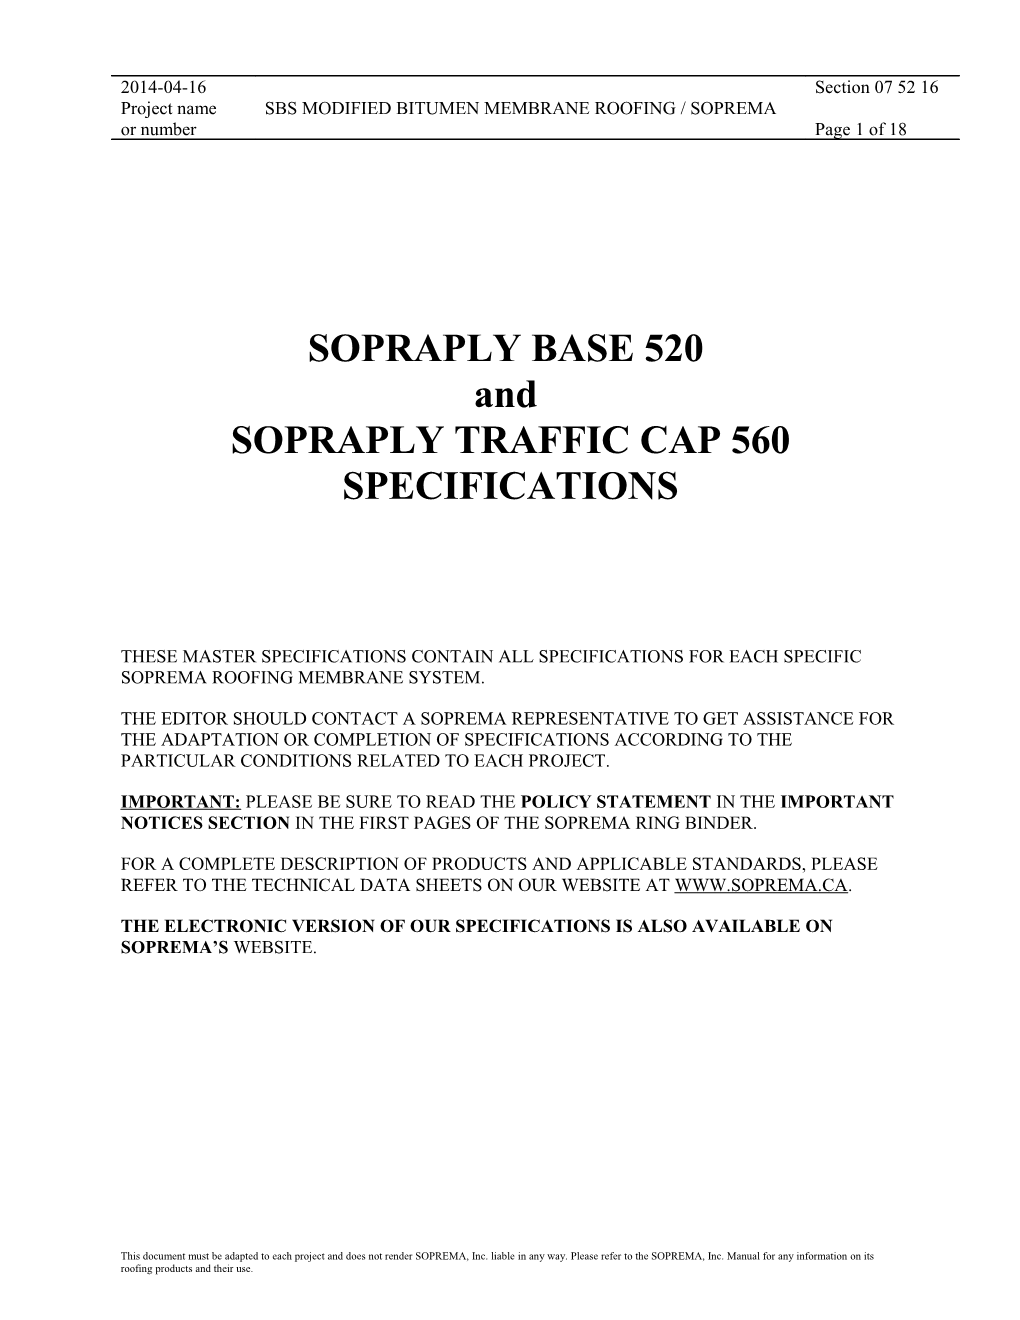 Sopraply Base 520